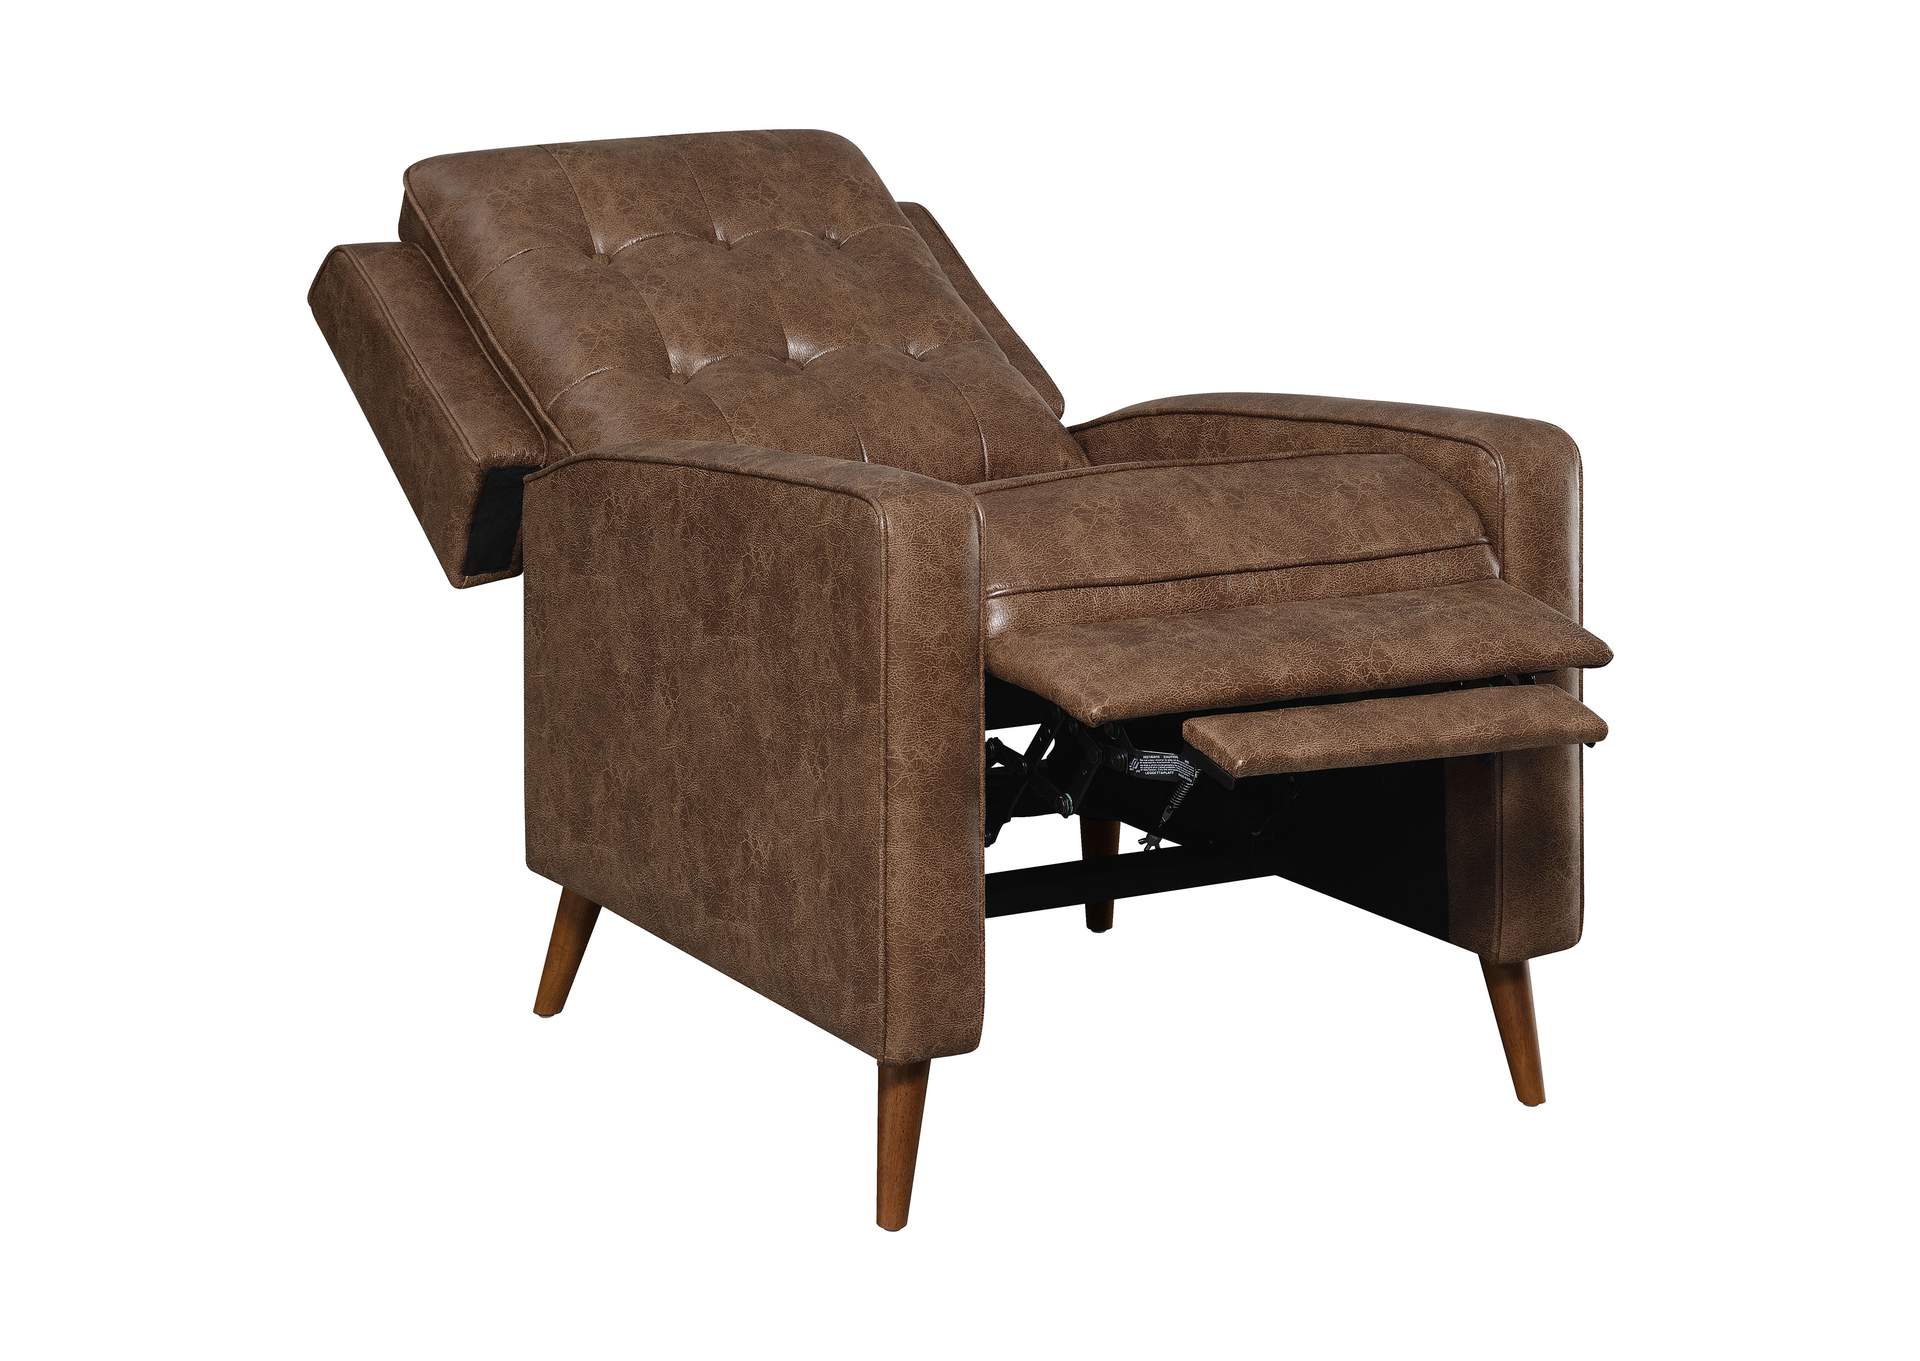 Davidson Upholstered Tufted Push Back Recliner Brown,Coaster Furniture